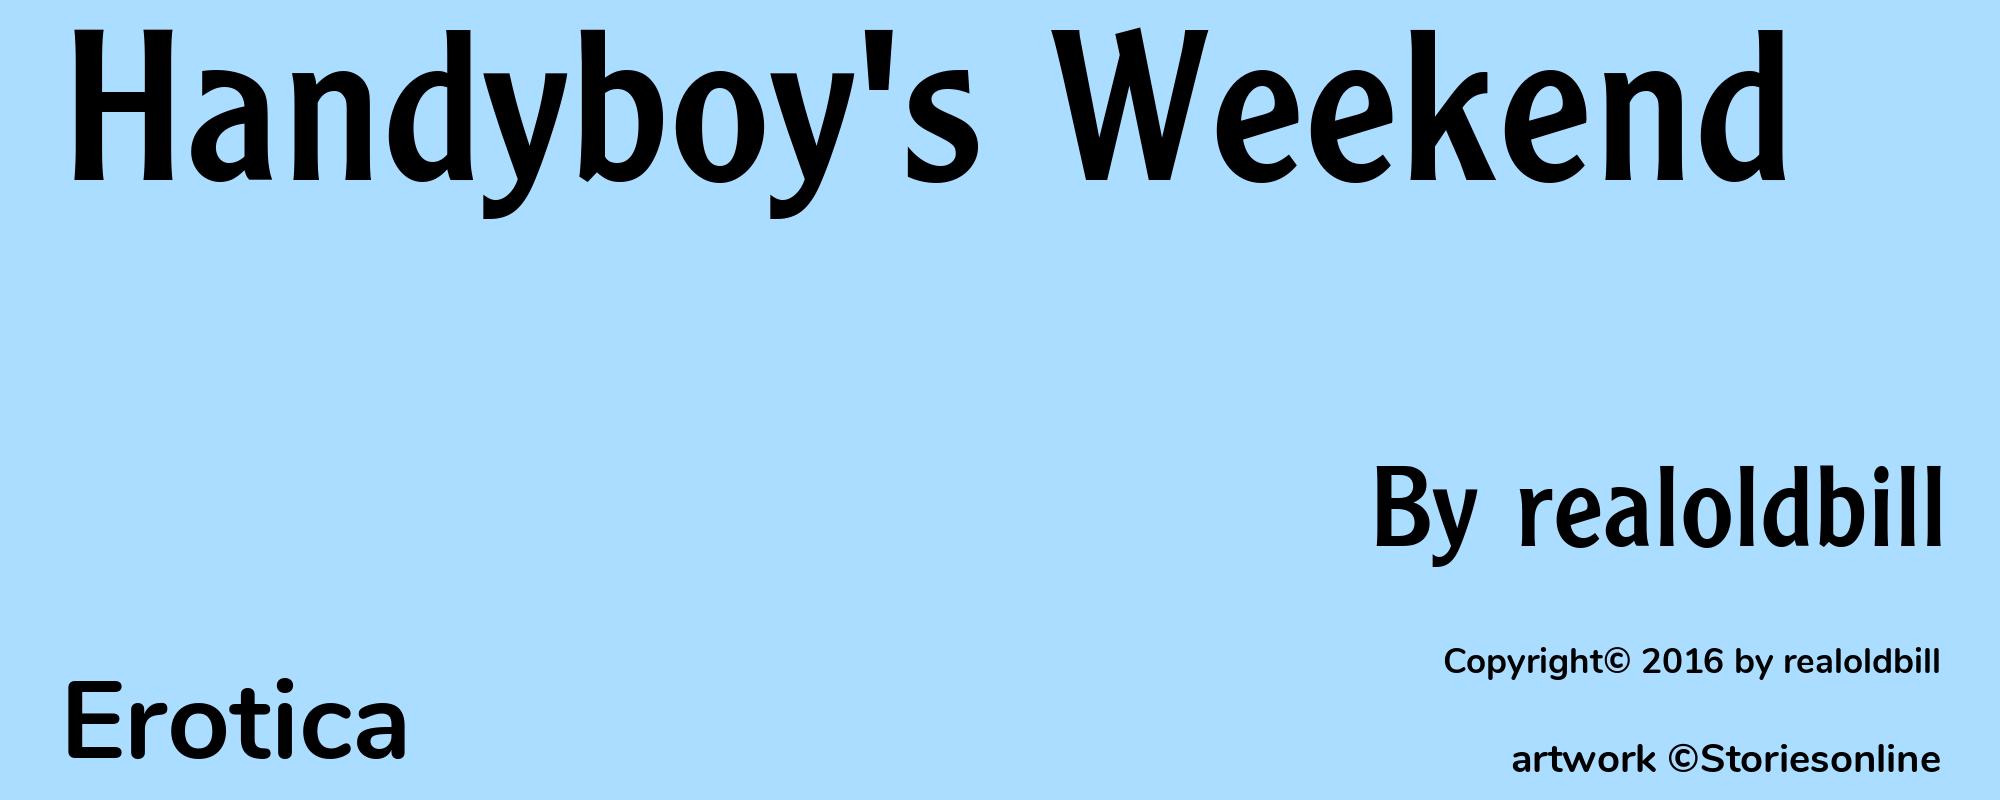 Handyboy's Weekend - Cover